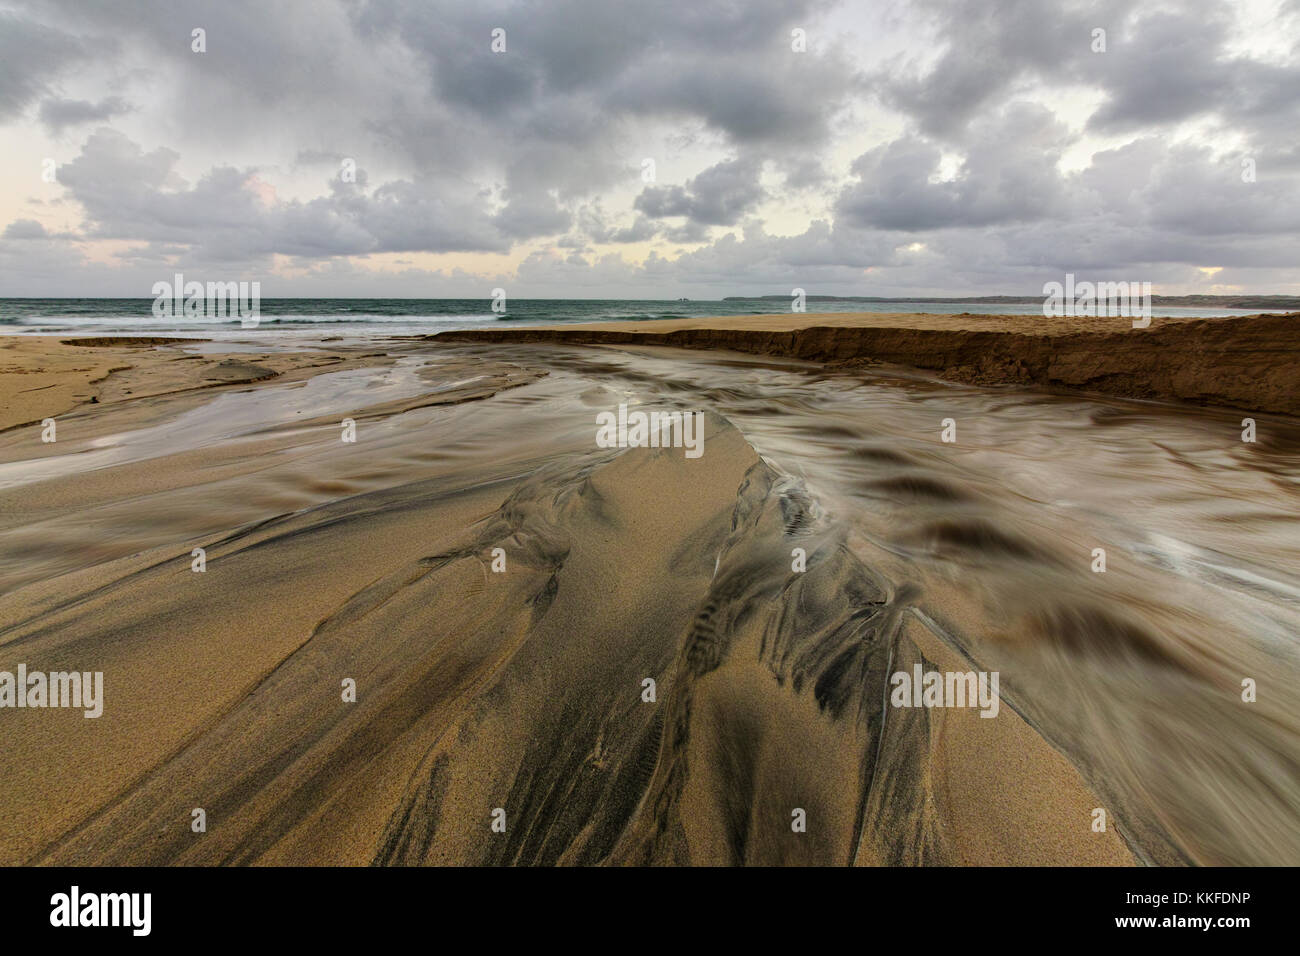 Il flusso di sabbia come le gare di acqua verso il mare aperto dopo il taglio di un canale in sabbia a Carbis Bay in West Cornwall, nel sud ovest dell'inghilterra. Foto Stock